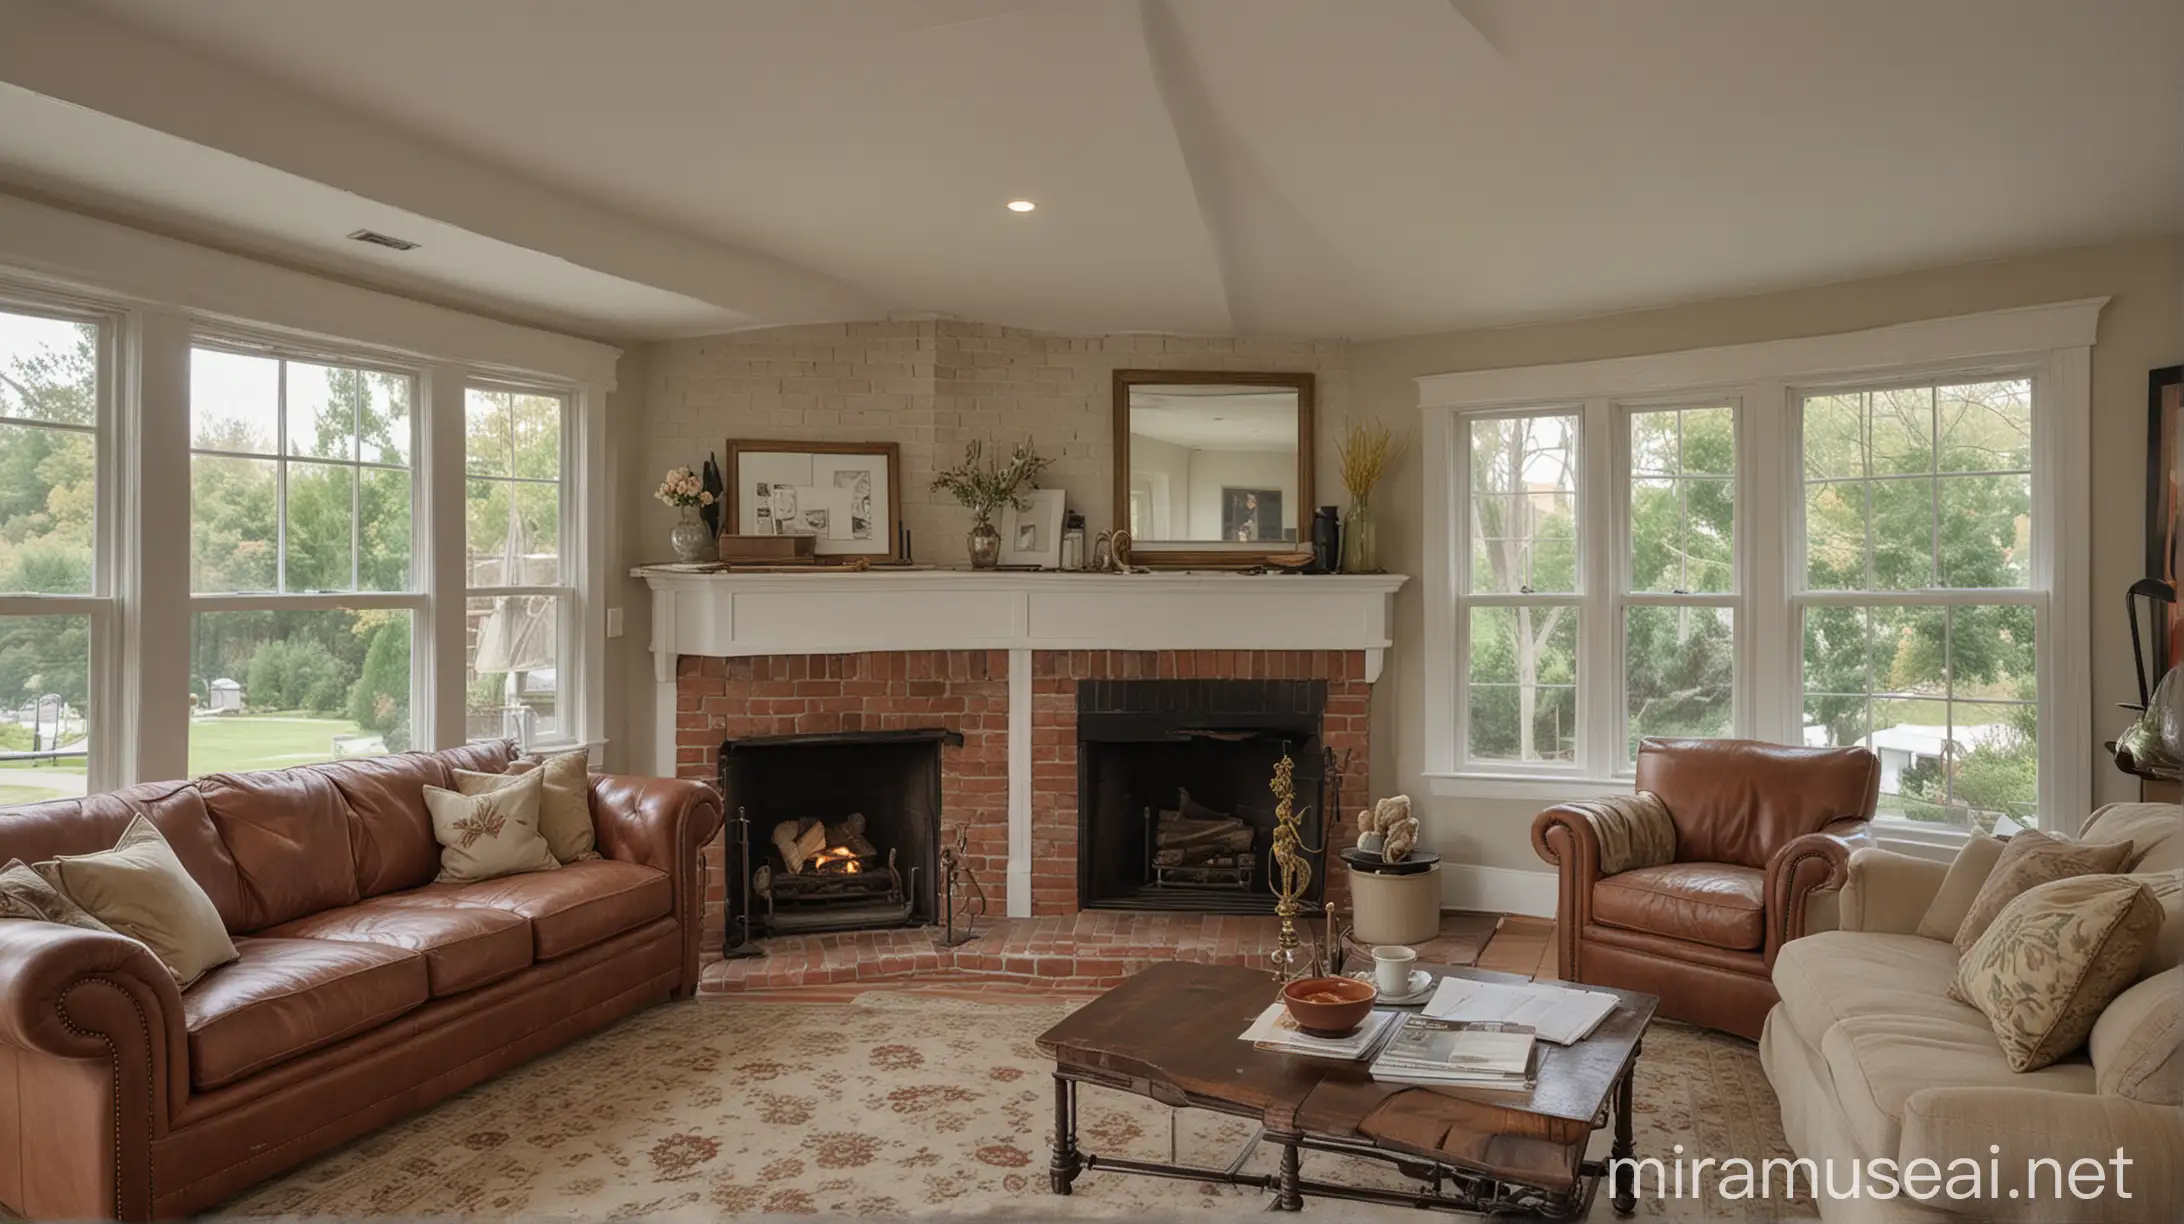 Perapian batu bata dipojokan dalam rumah dengan perabotan dan jendela klasik yang menenangkan serta nyaman